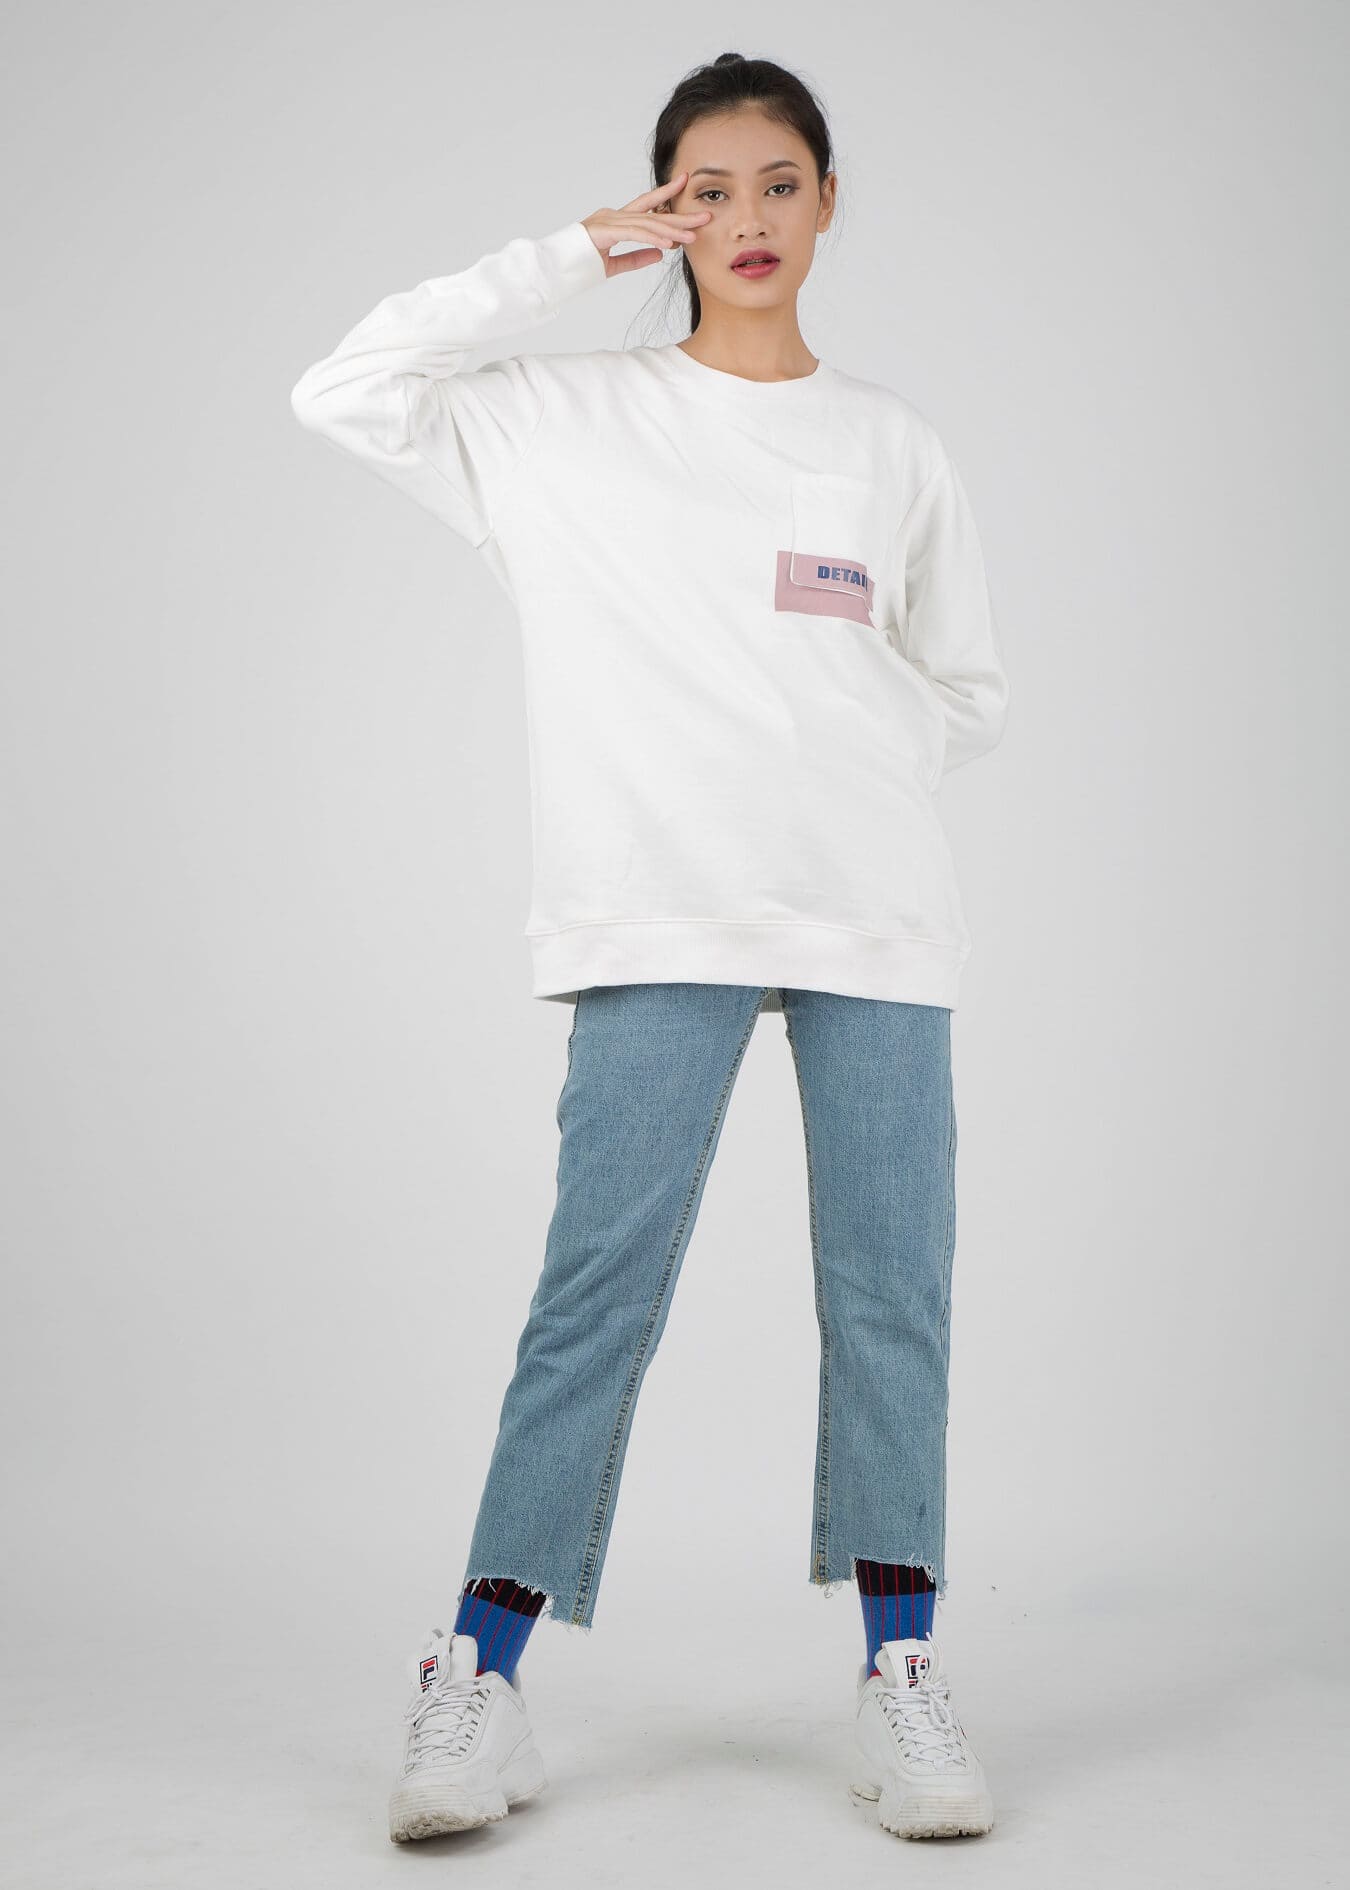 quần jean ống rộng phối áo phông trắng dài tay basic và Sneaker